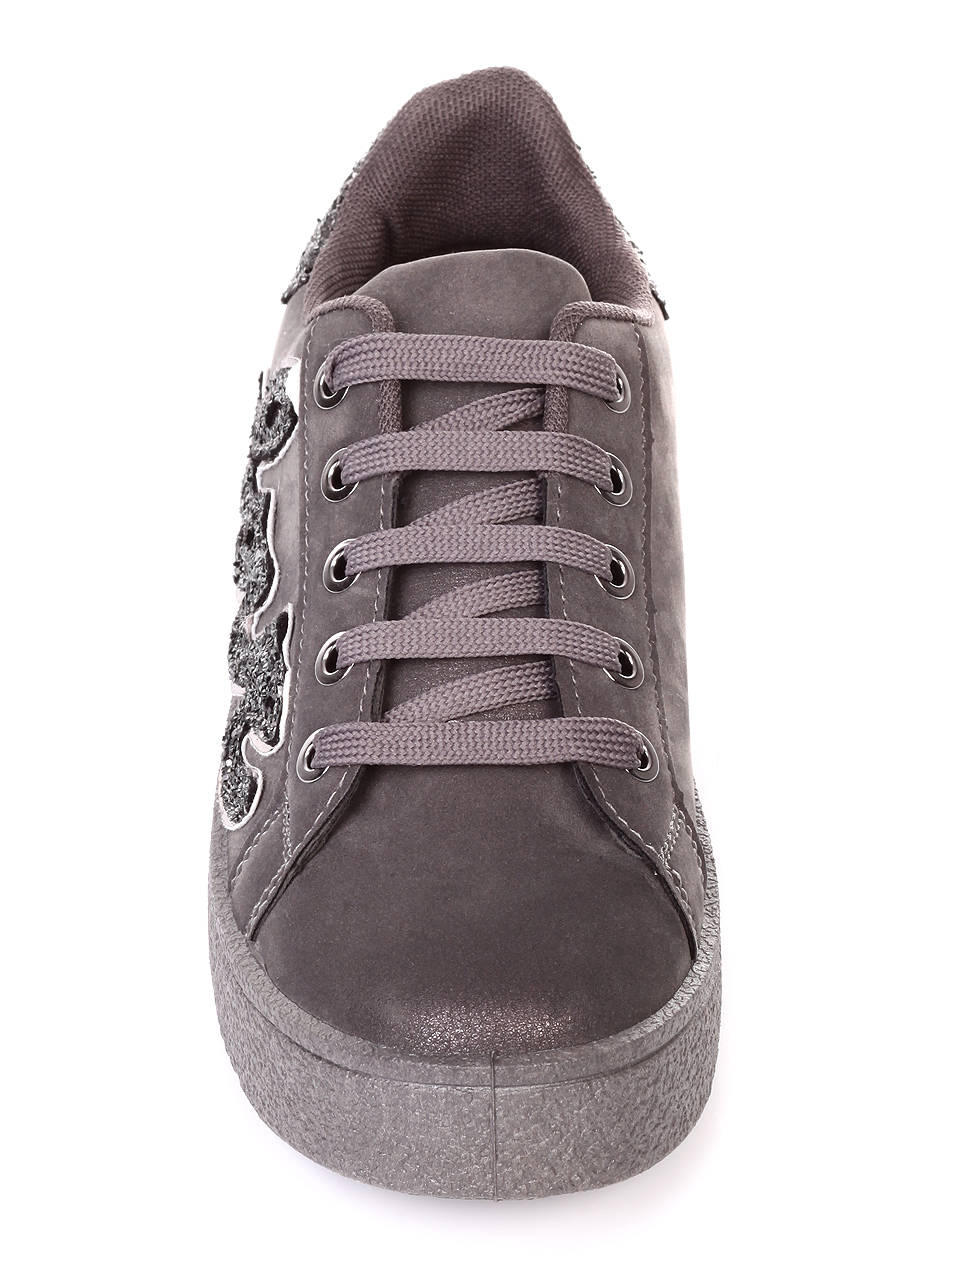 Ежедневни дамски обувки в сиво 3U-18645 grey